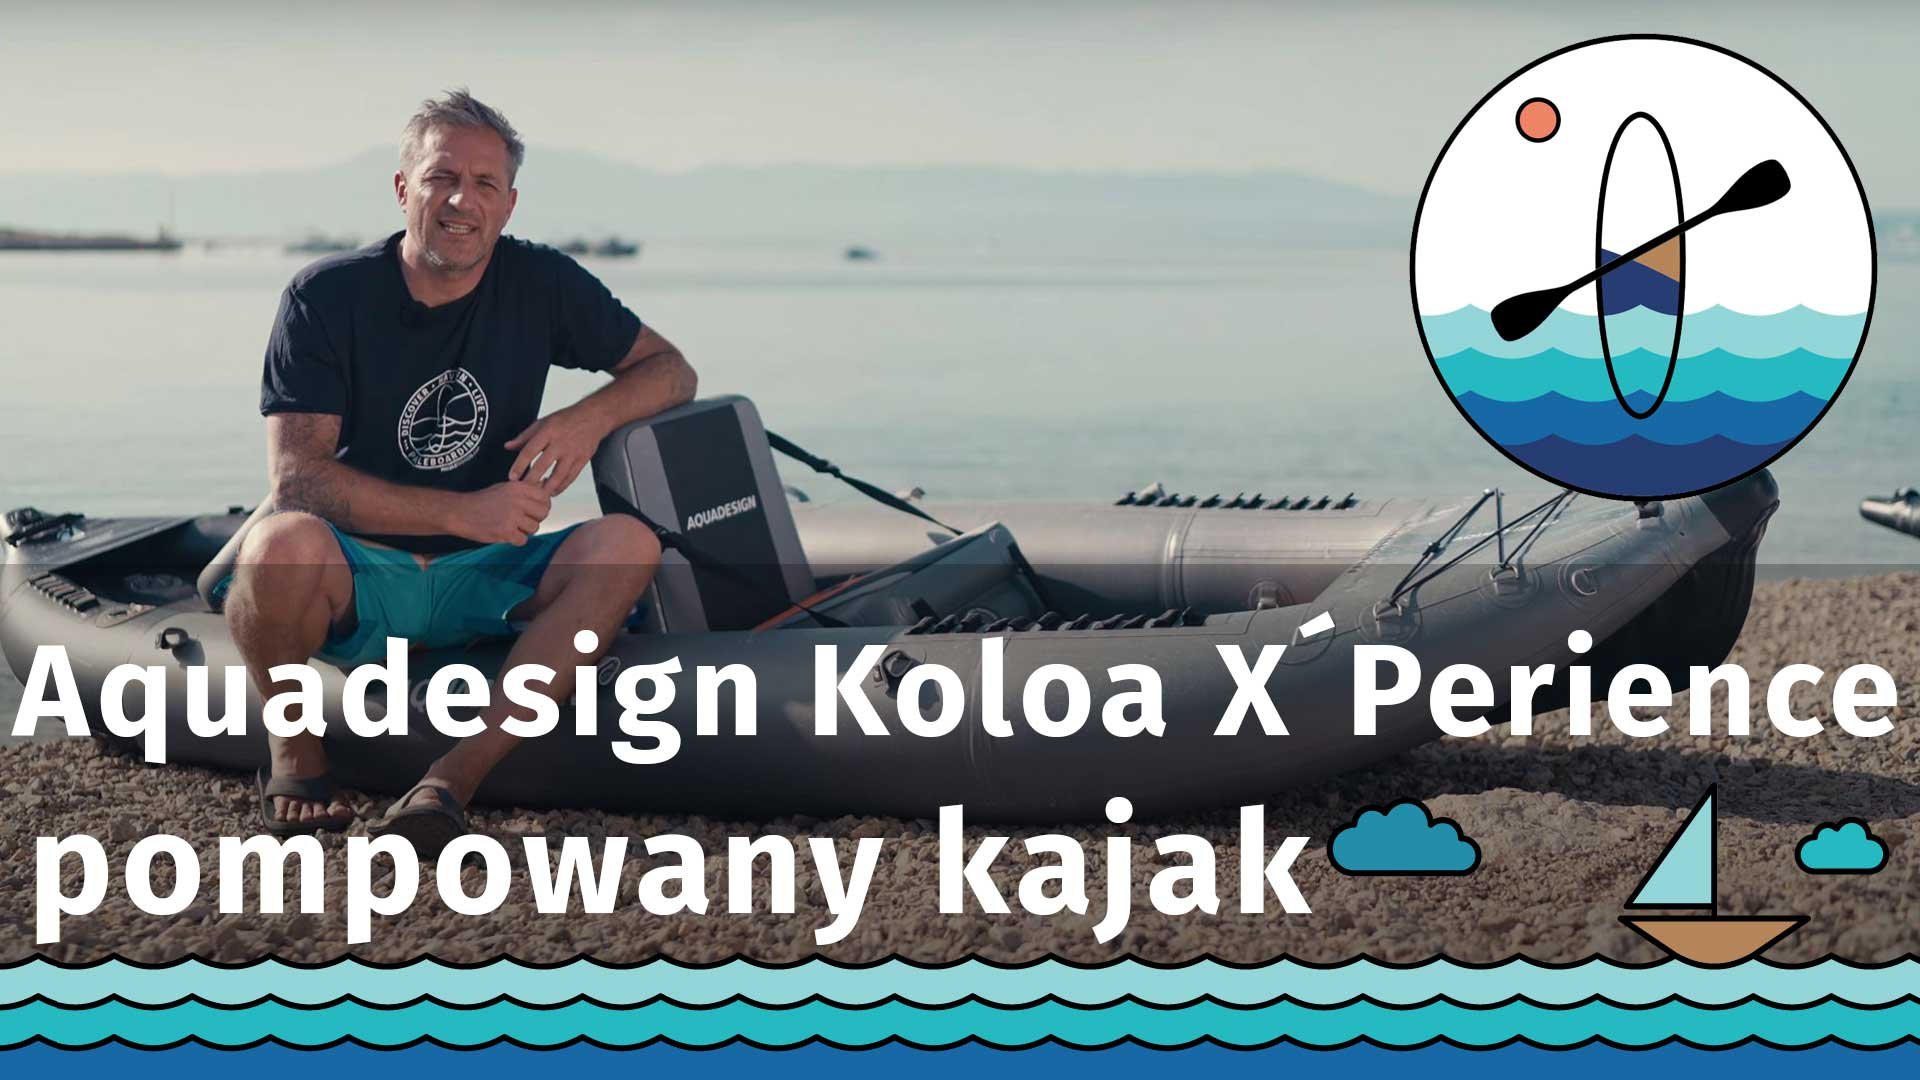 Pompowany kajak Aquadesign Koloa X´Perience